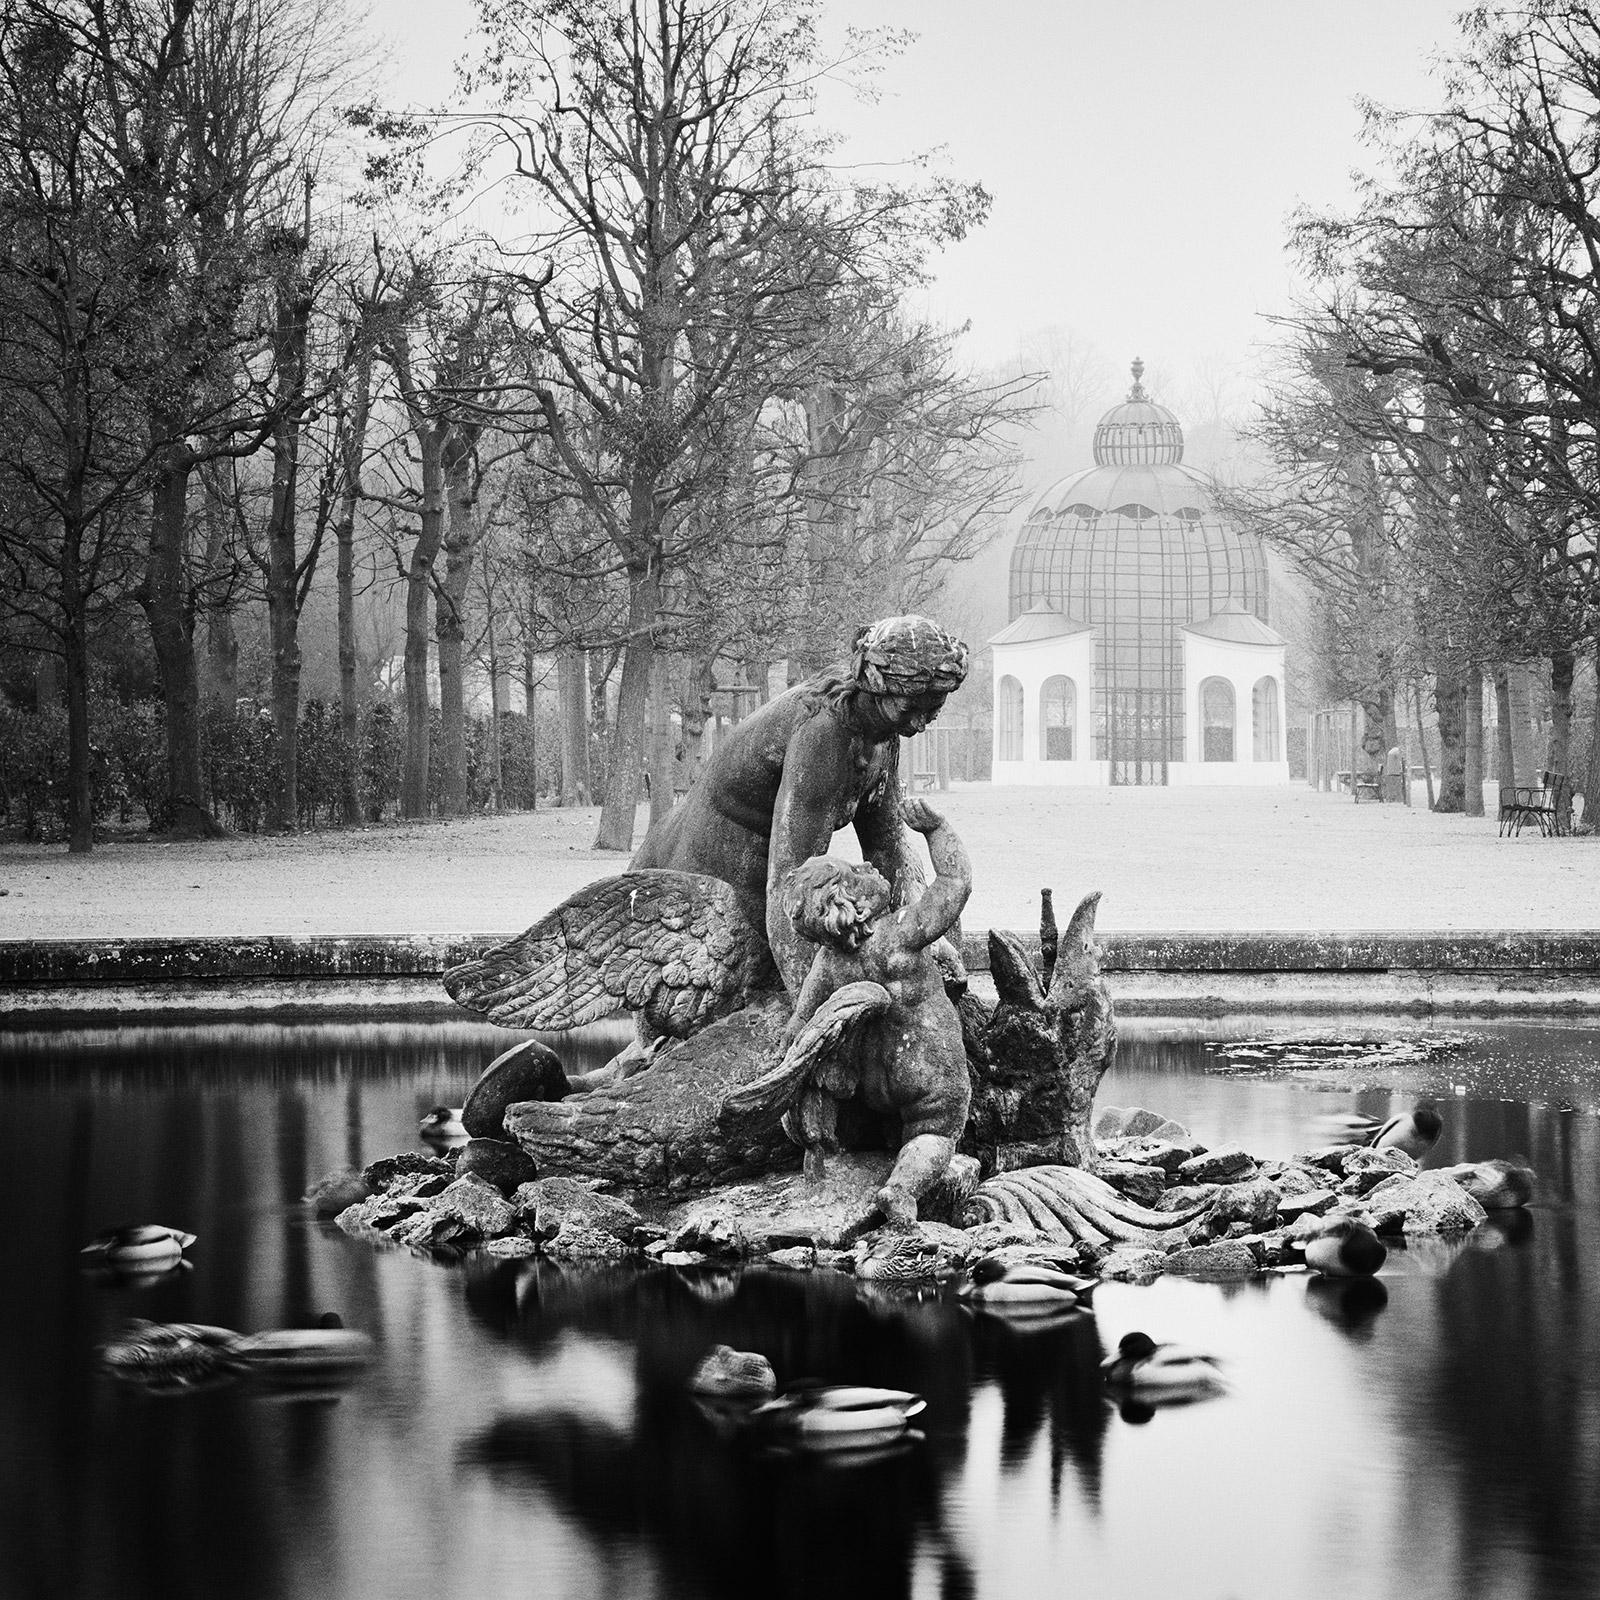 Duck Race, Schloss Schoenbrunn, Vienna, black and white photography, landscape